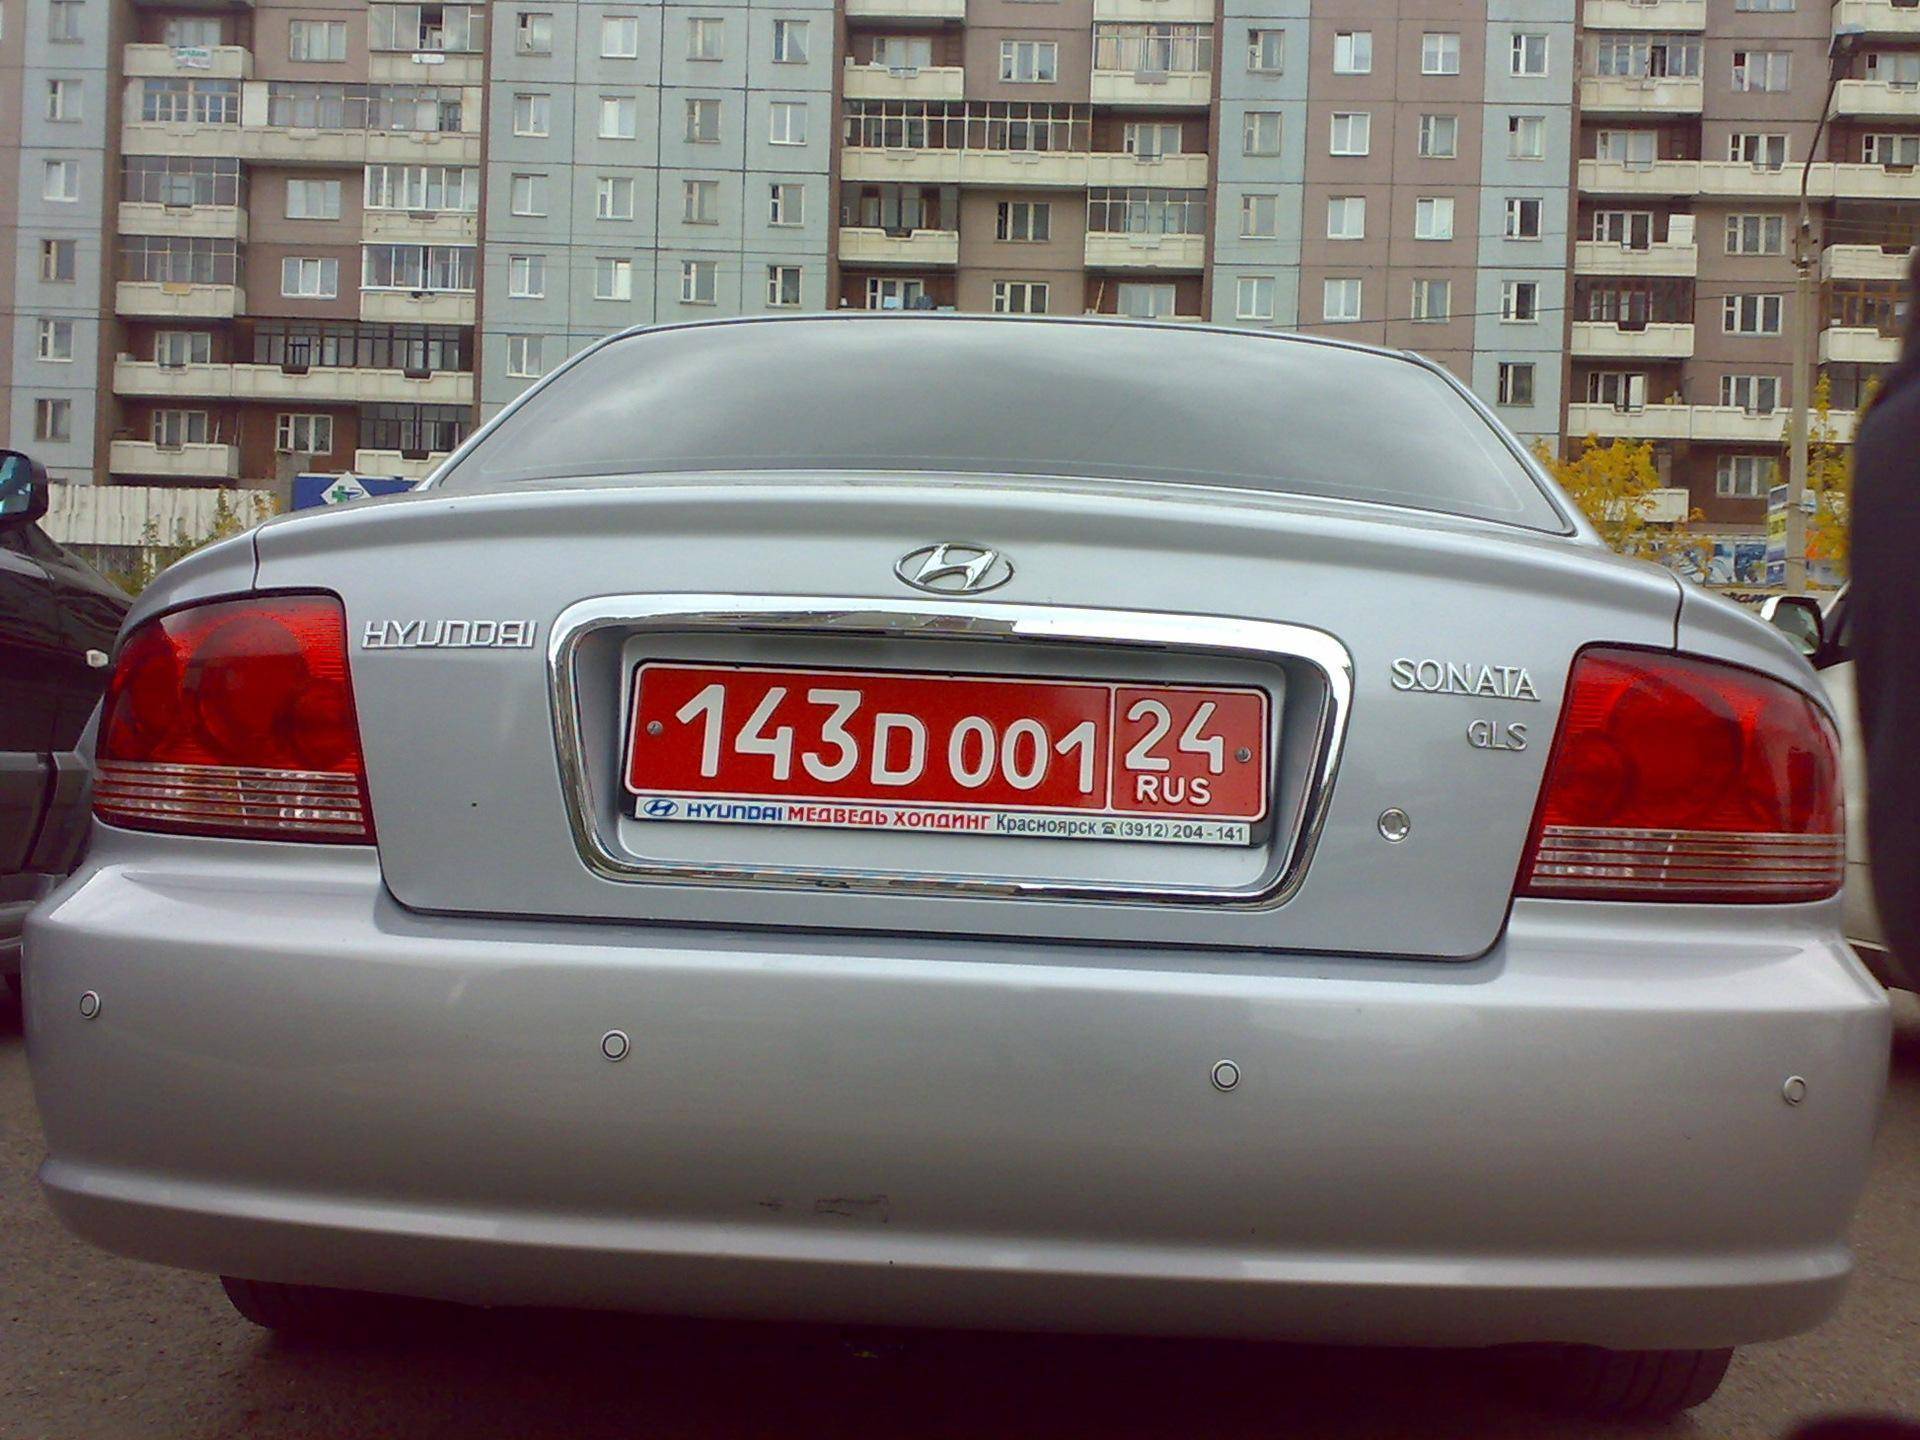 Красные номера на машине в россии: что означают